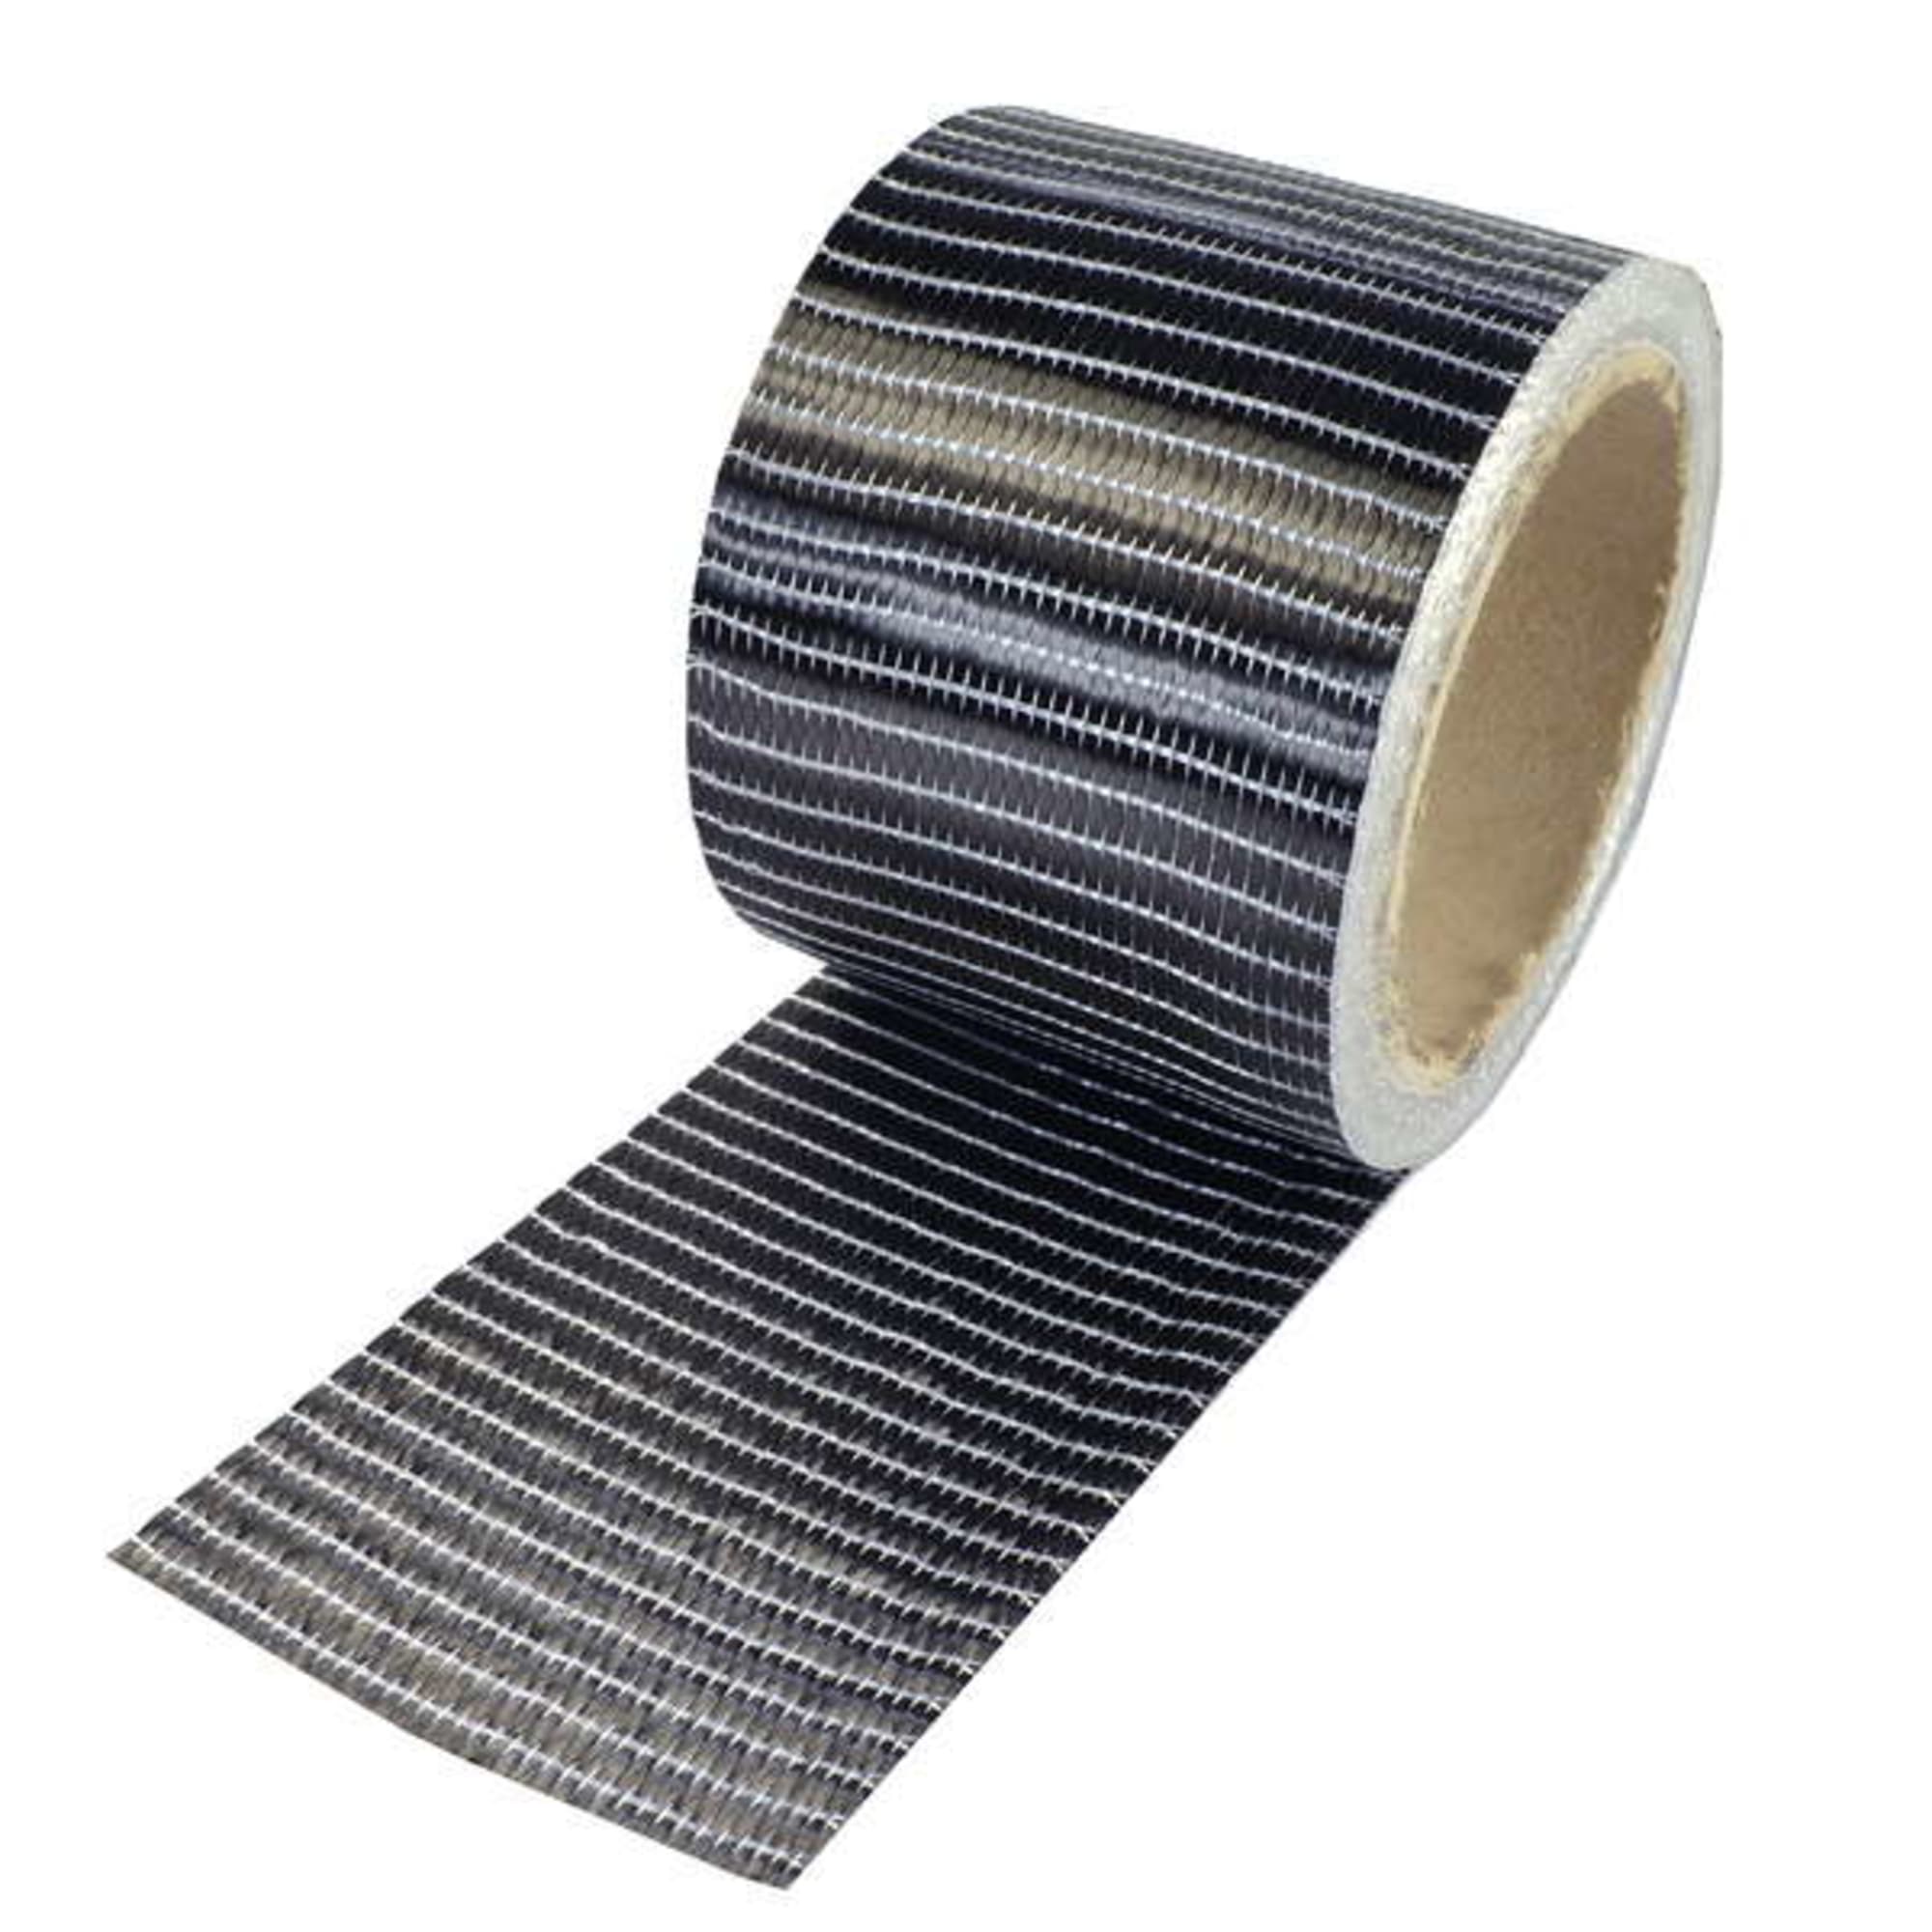 Carbon fibre tape 250 g/m² (unidirectional) 75 mm